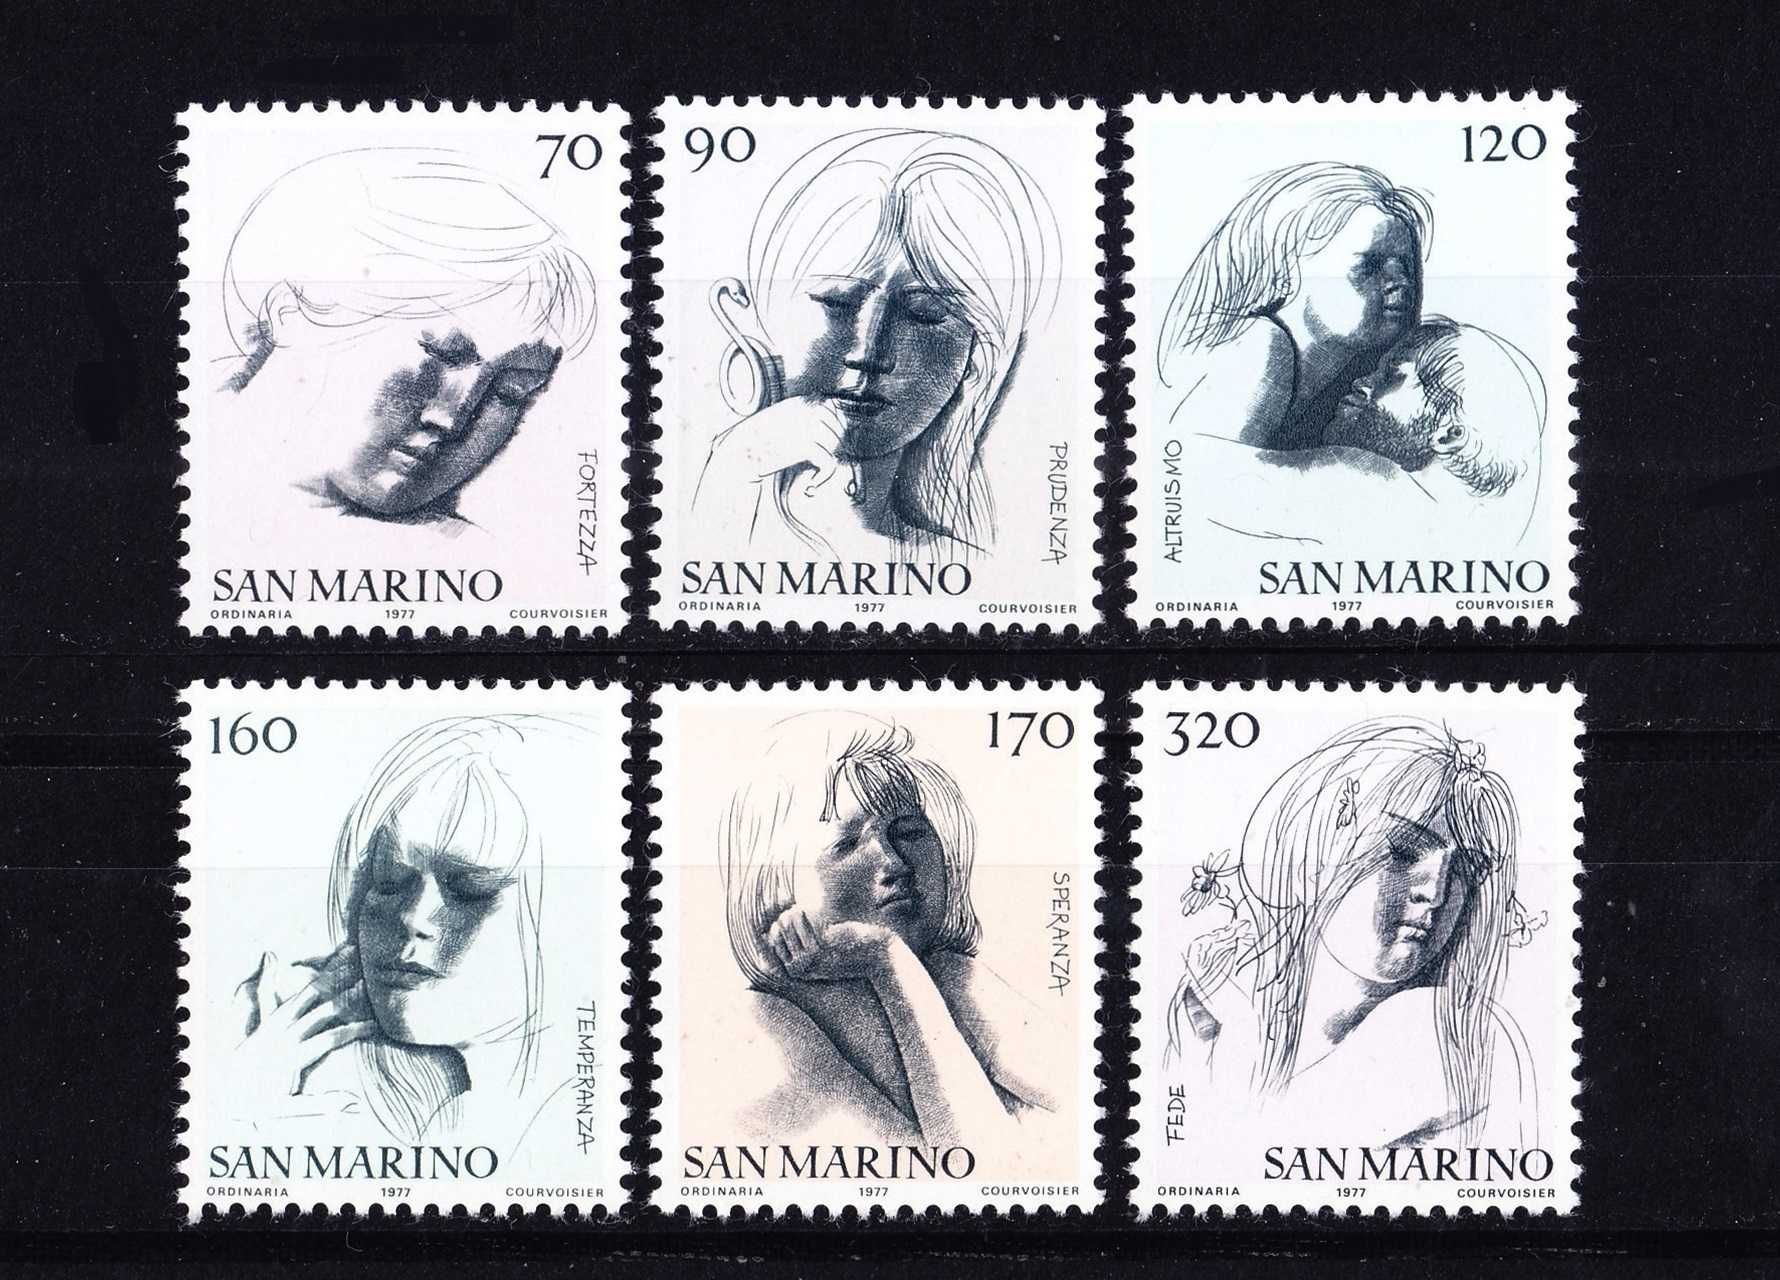 1977 - São Marino - Selos novos (MNH)